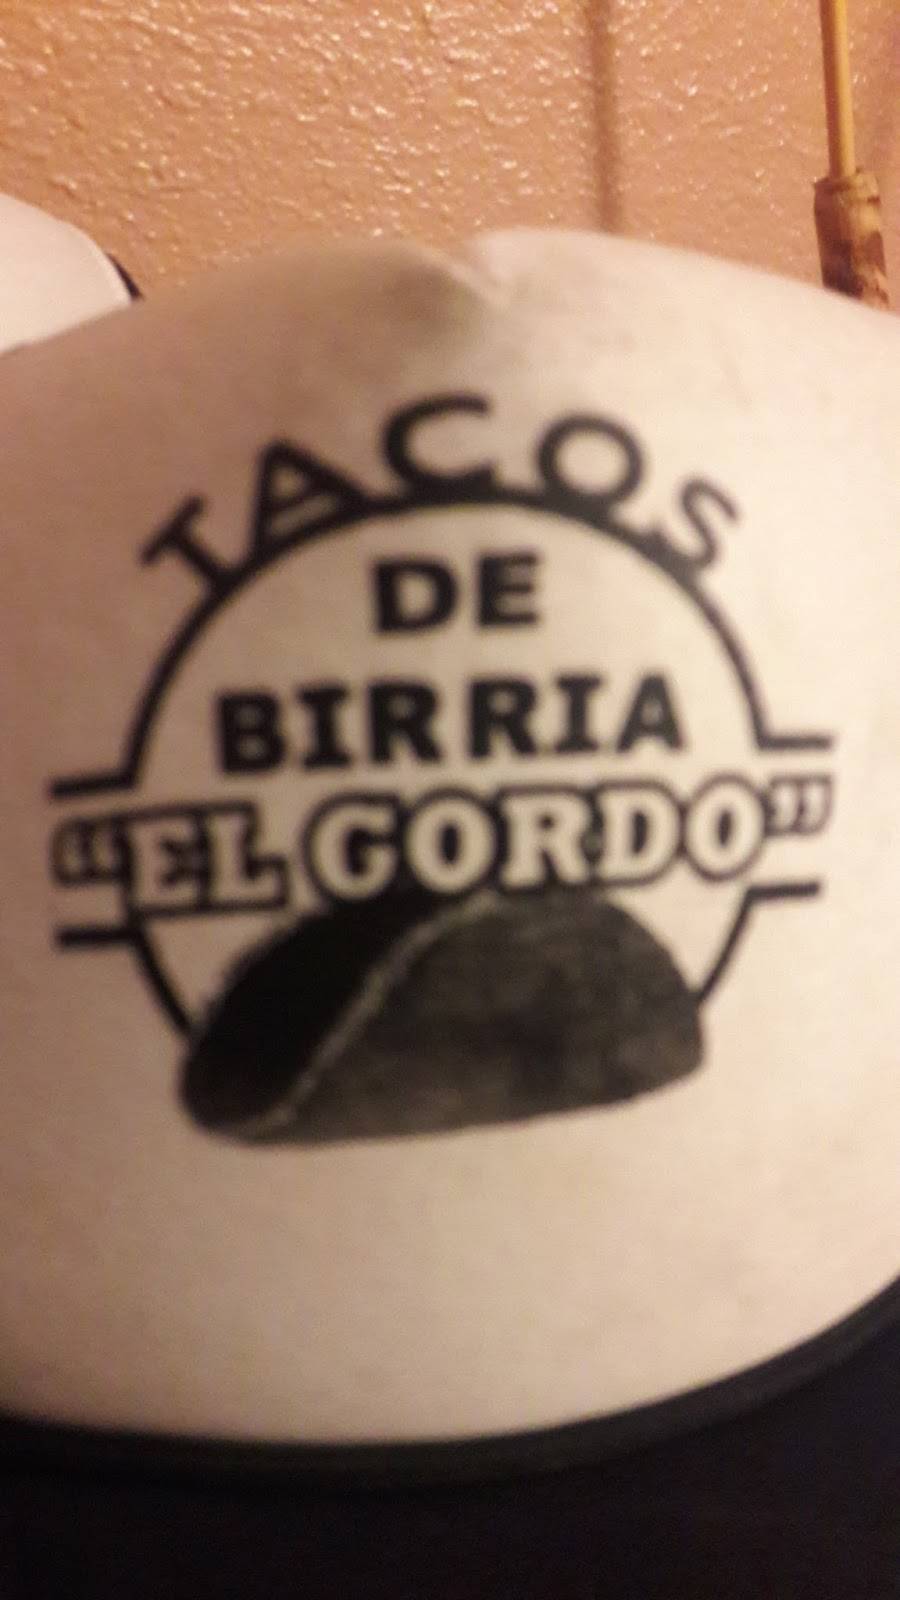 Tacos De Birria El Gordo | Tacos De Birria El Gordo, José López Portillo, Baja Maq el Aguila, 22215 Tijuana, B.C., Mexico | Phone: 664 350 9922